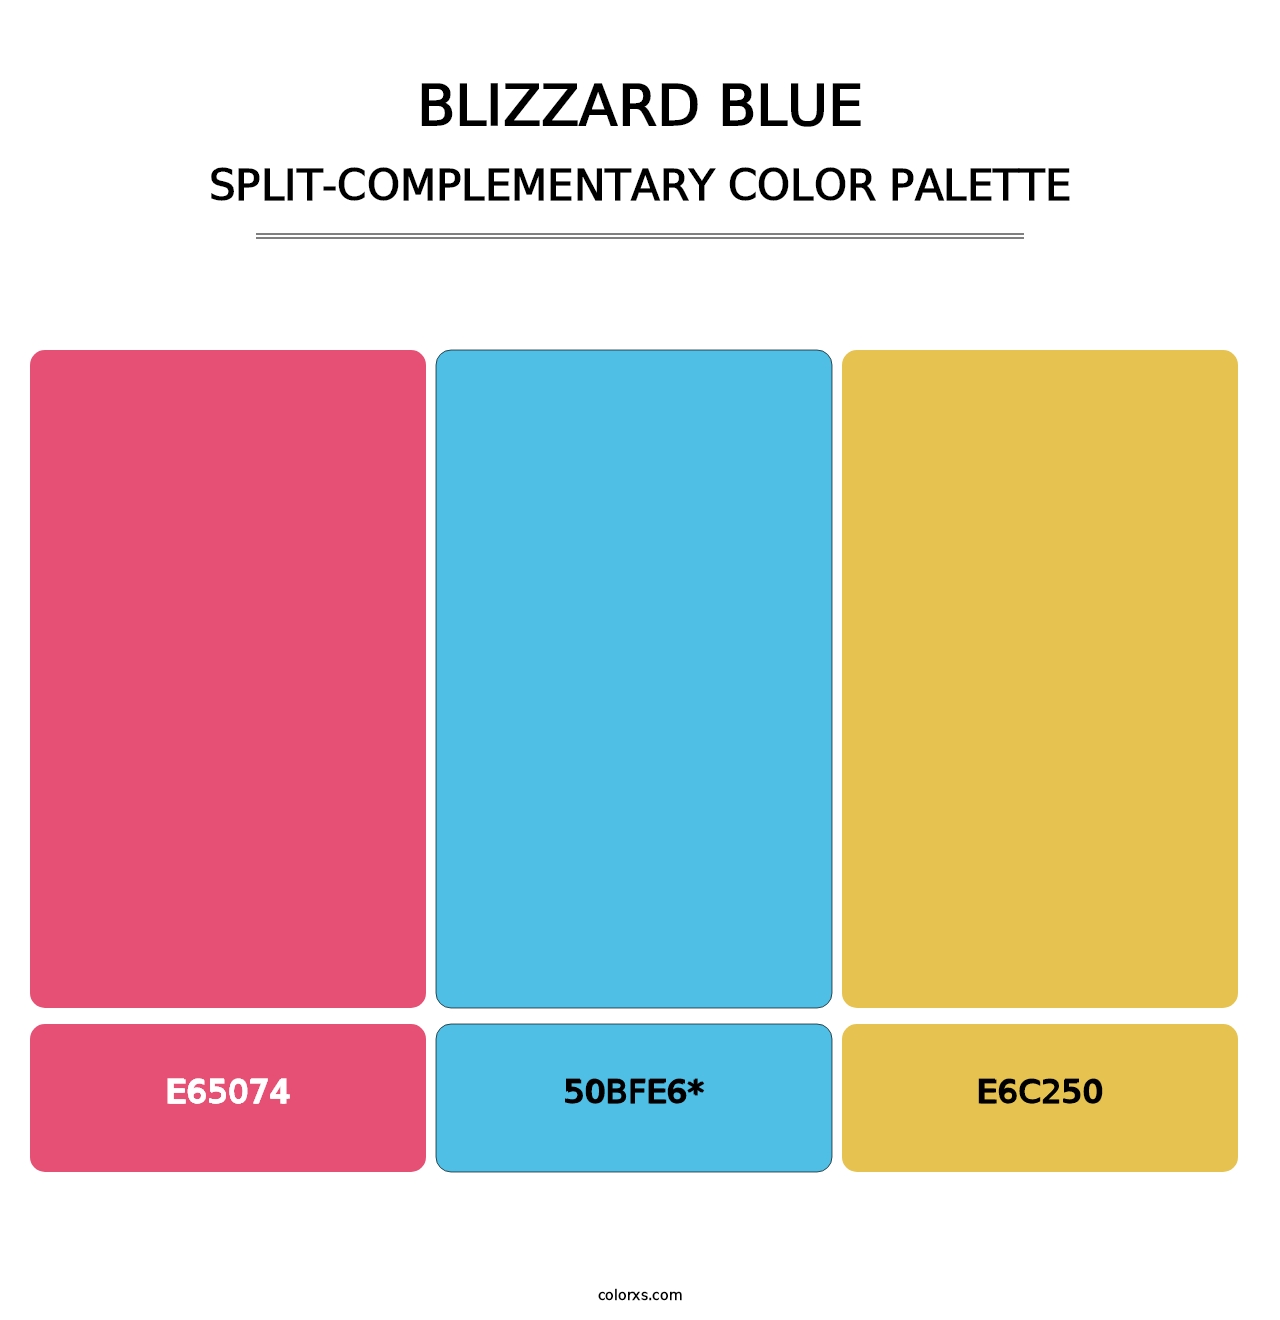 Blizzard Blue - Split-Complementary Color Palette